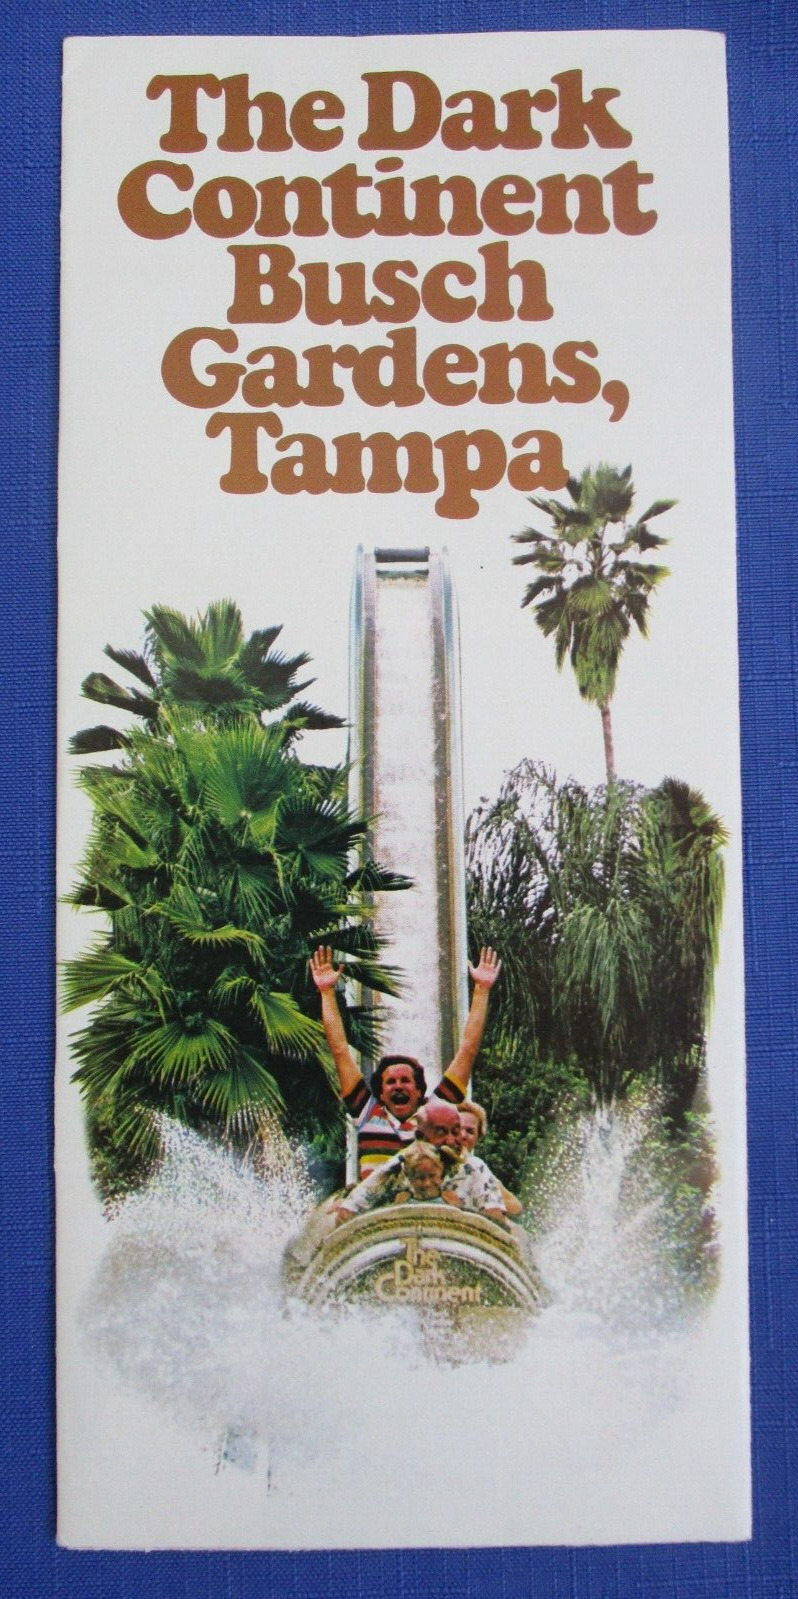 Vintage Busch Gardens Tampa Florida Brochure Pamphlet 1978 Dark Continent Africa